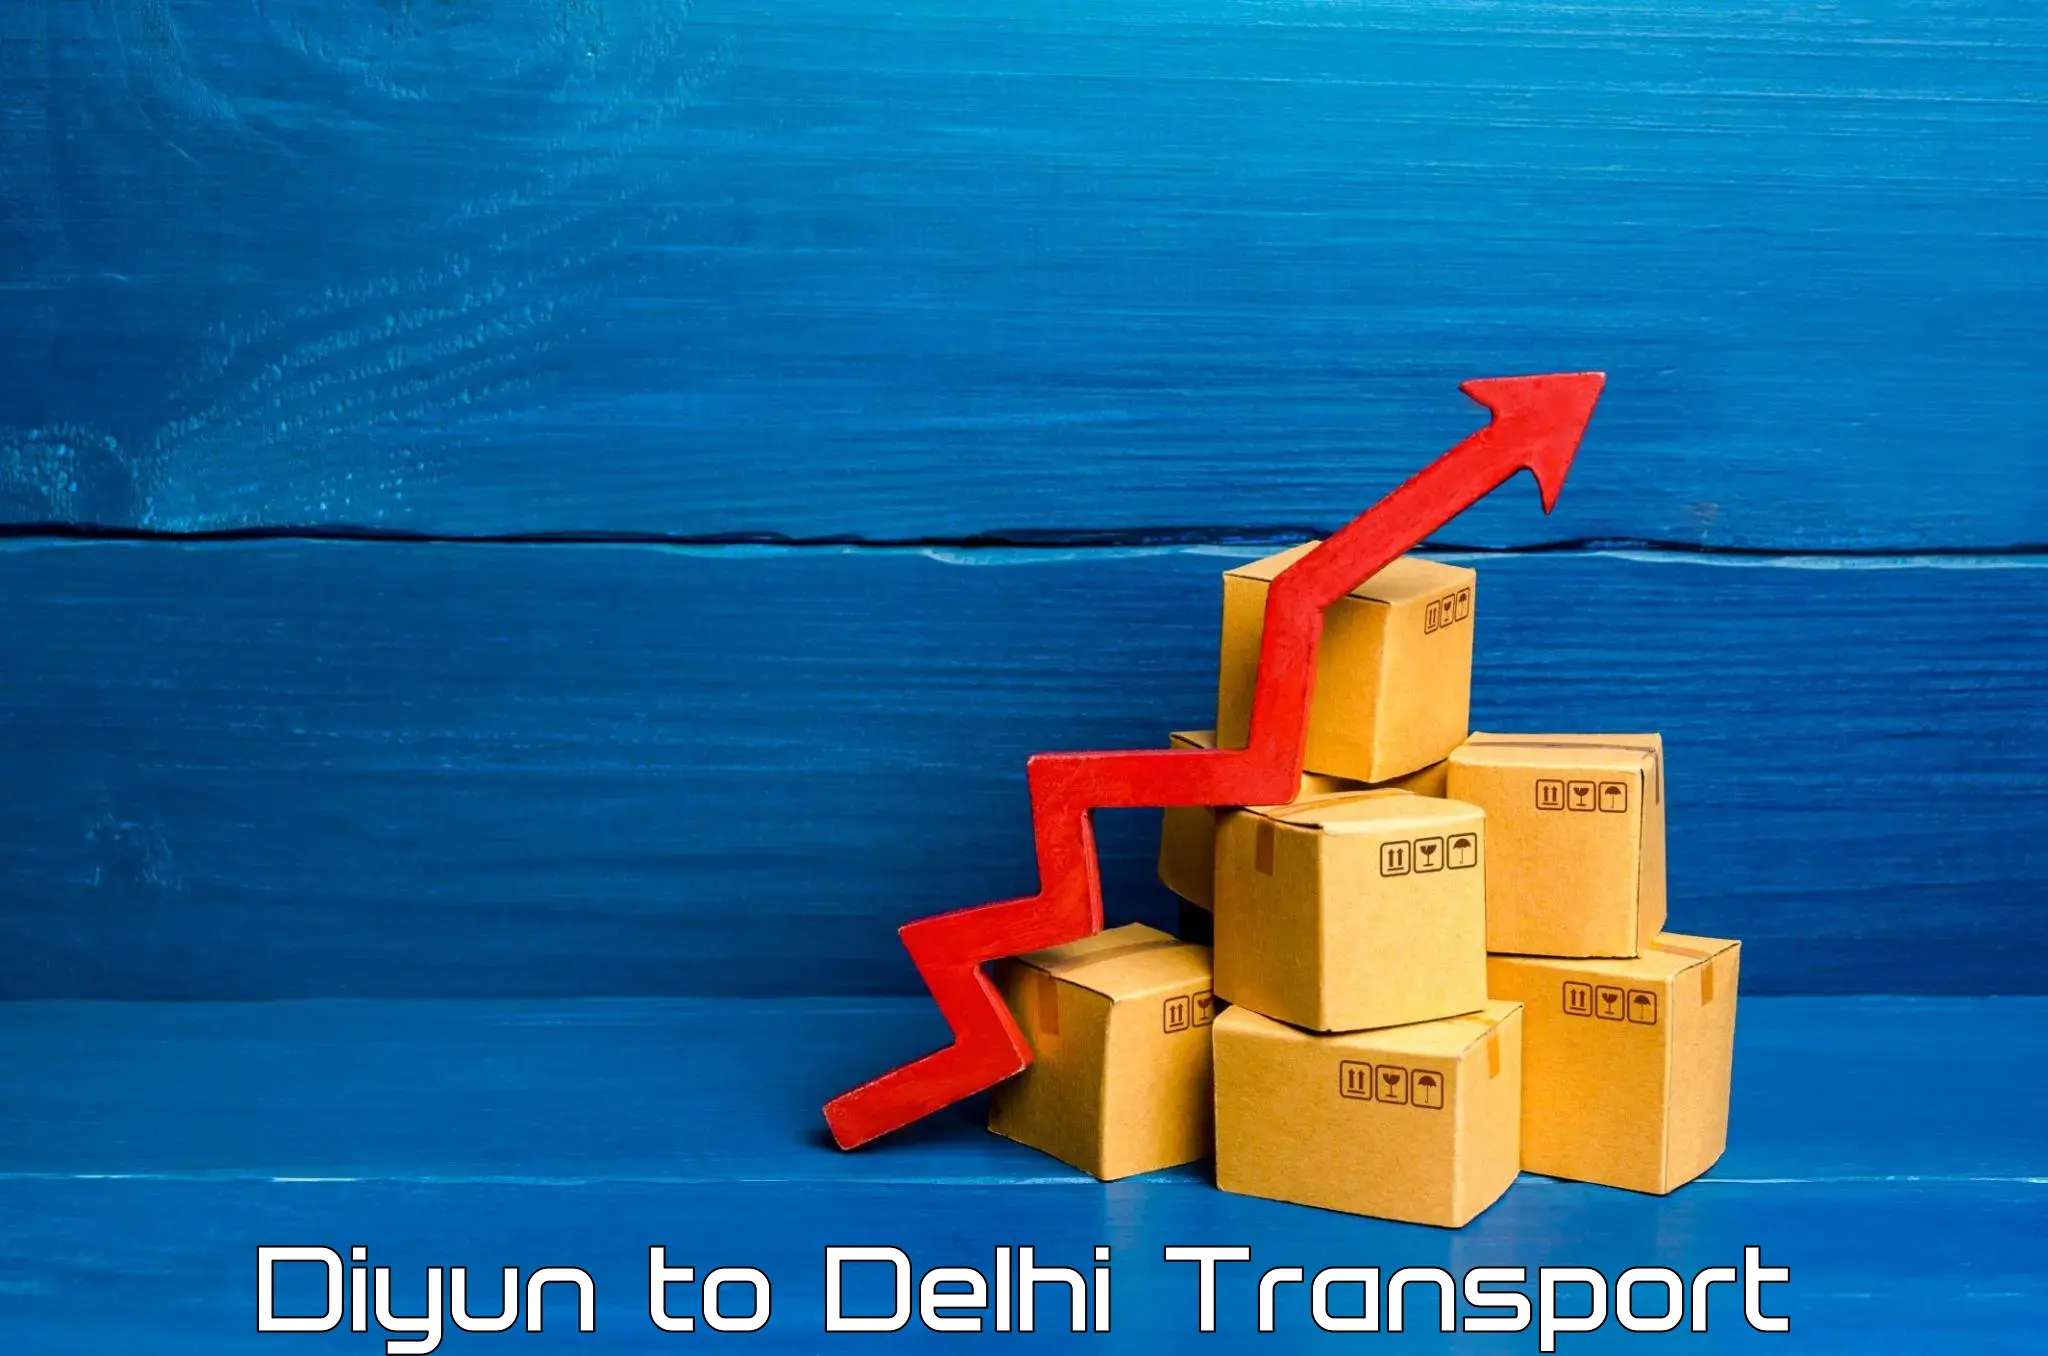 Commercial transport service Diyun to Sarojini Nagar